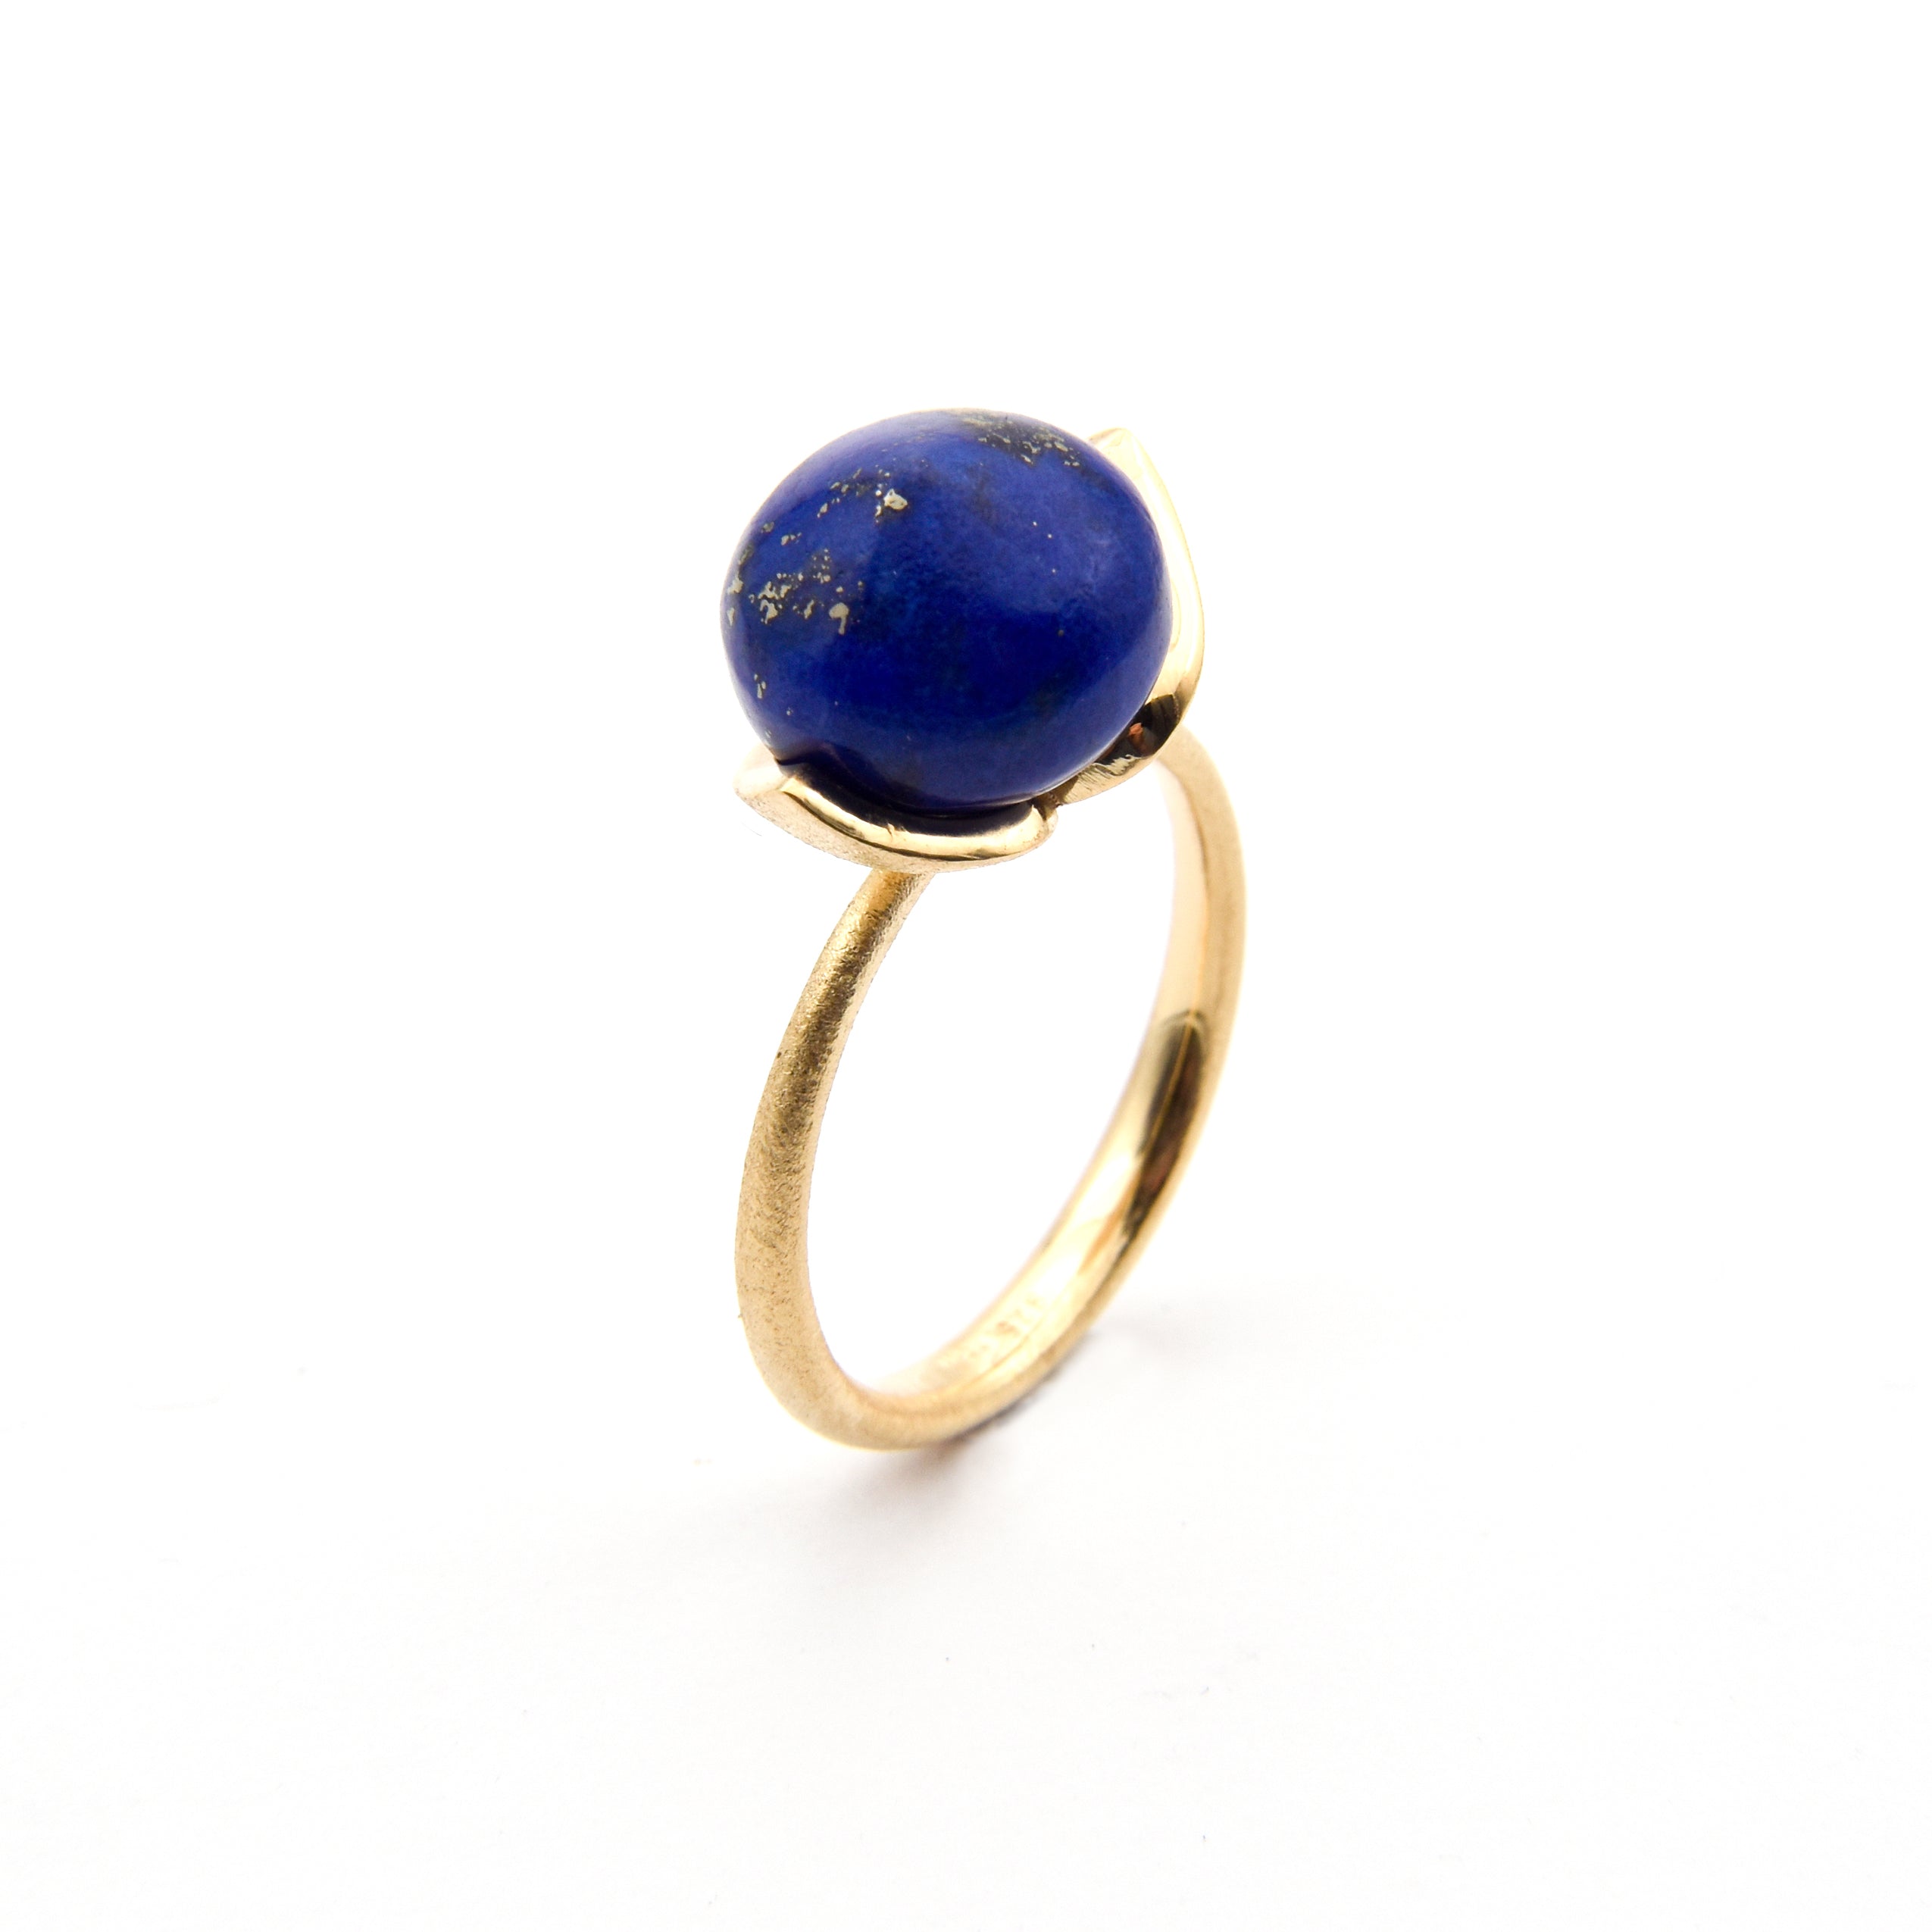 Dolce ring "medium" met lapis lazuli 925/-